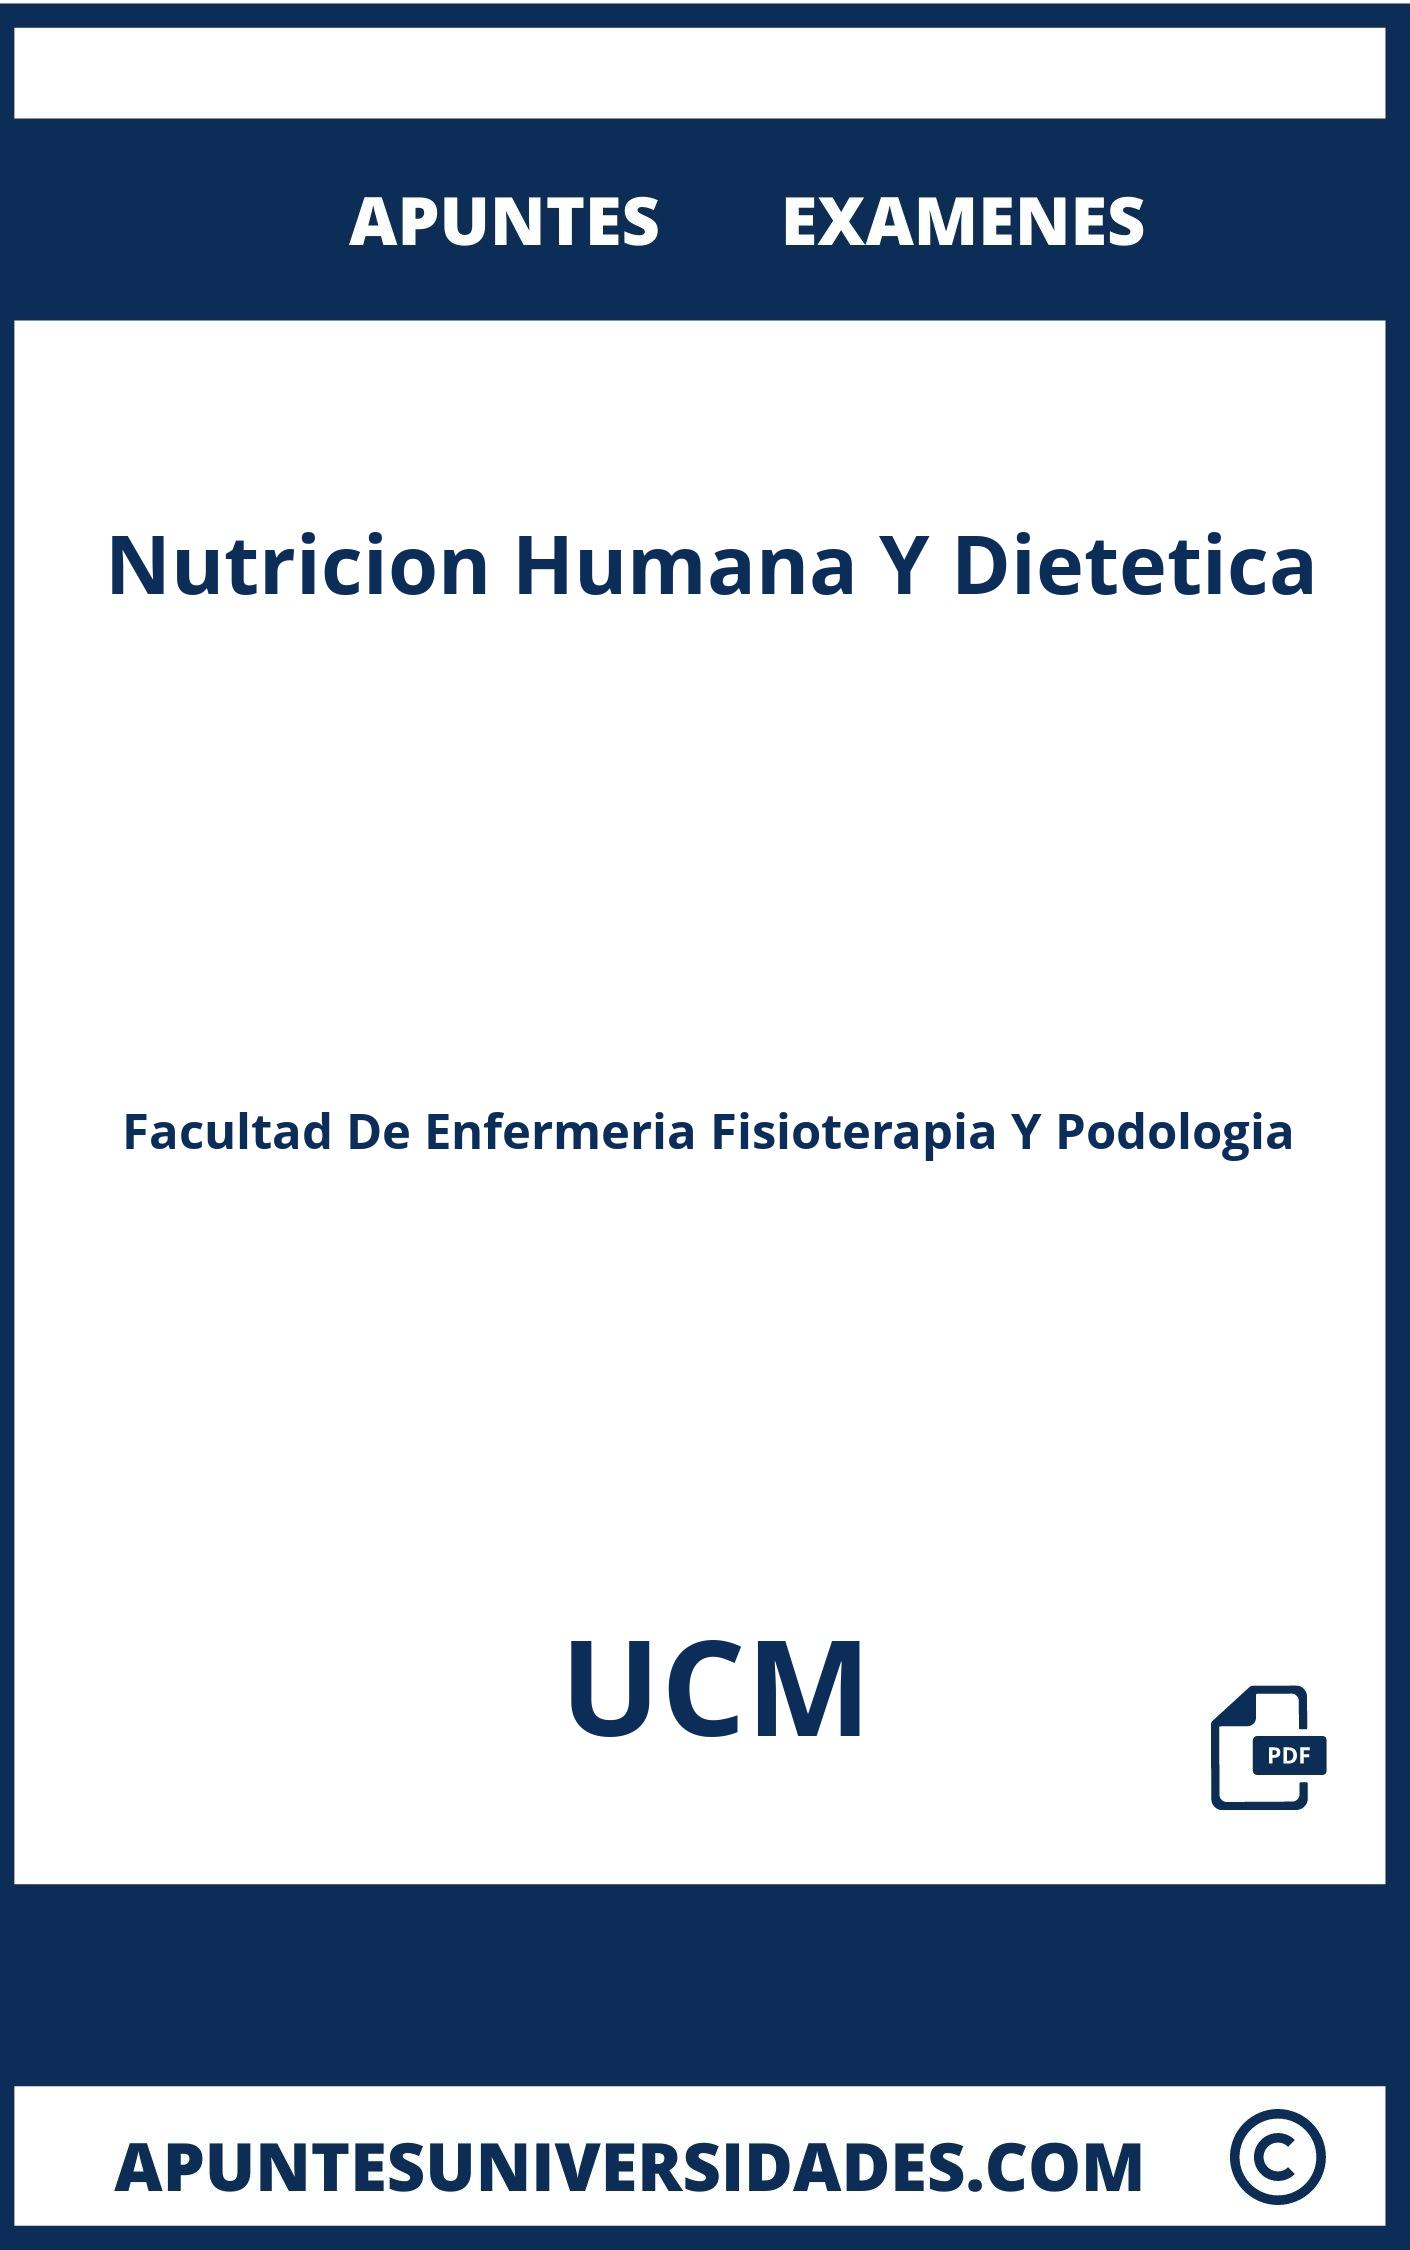 Examenes y Apuntes Nutricion Humana Y Dietetica UCM